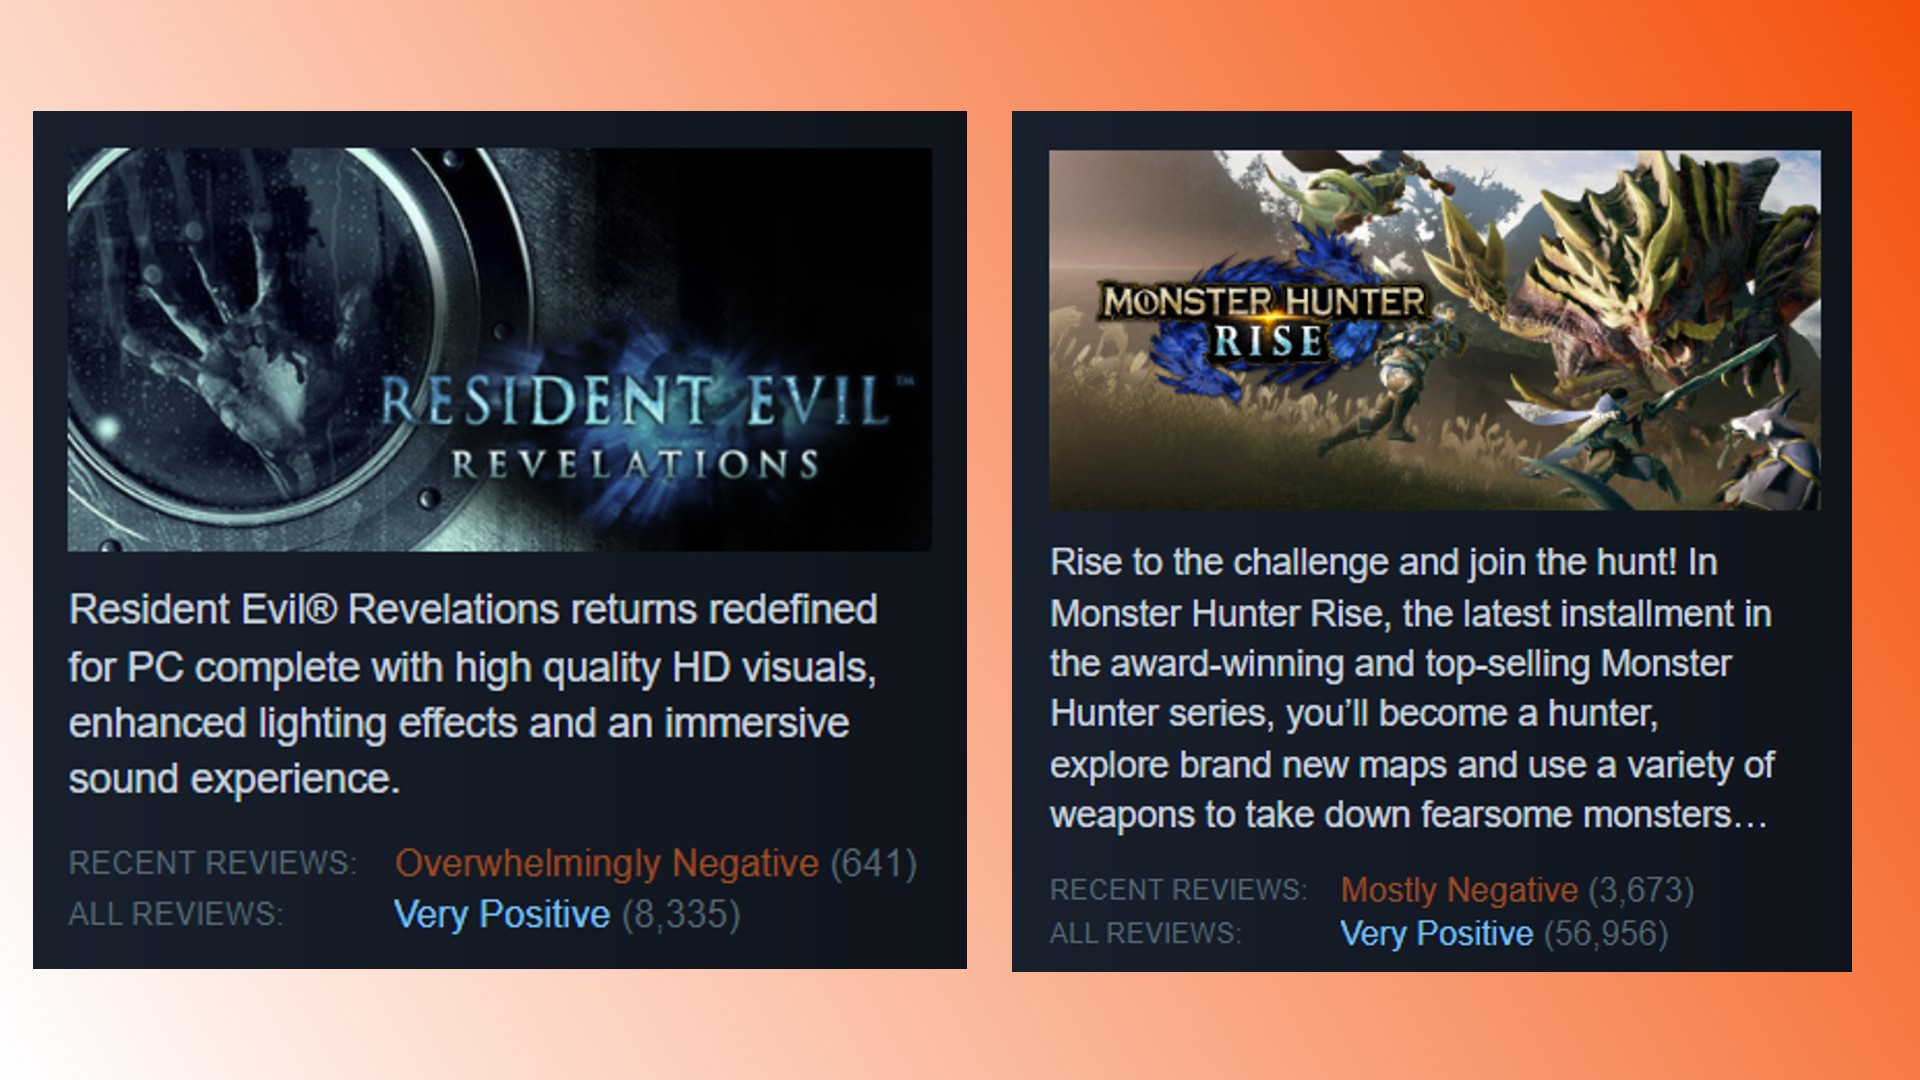 Steam-Rezensionsbombe zur Resident Evil-Serie: Ein Vergleich der Steam-Rezensionen von Resident Evil und Monster Hunter